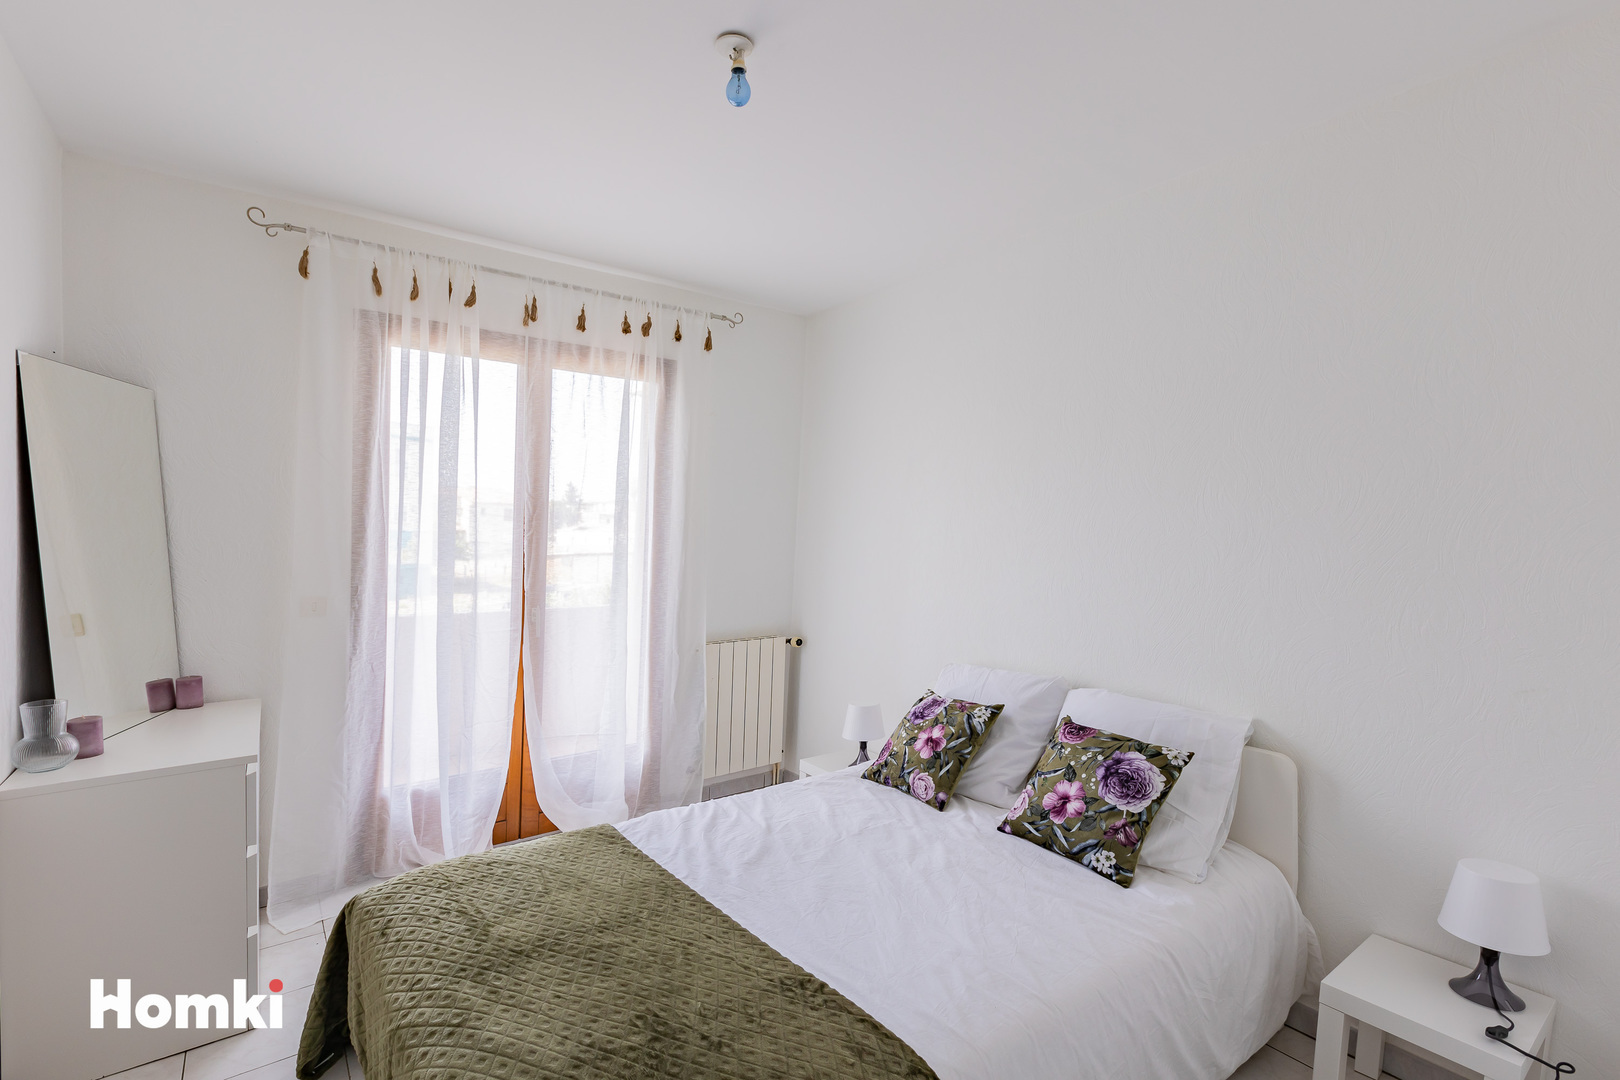 Homki - Vente Maison/villa  de 70.0 m² à Agde 34300